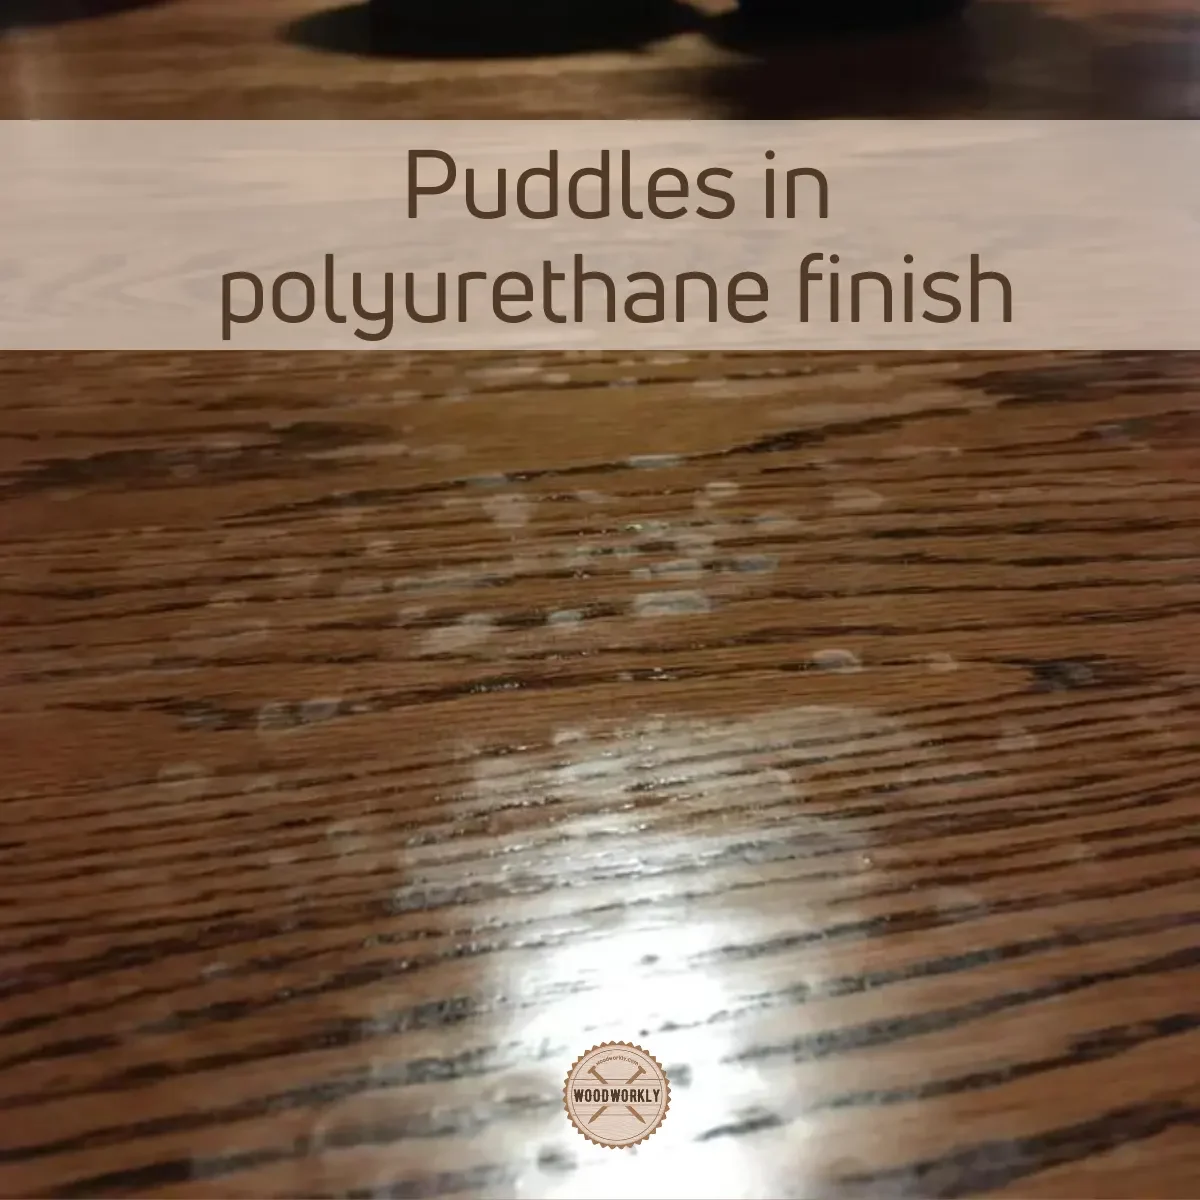 Puddles in polyurethane finish